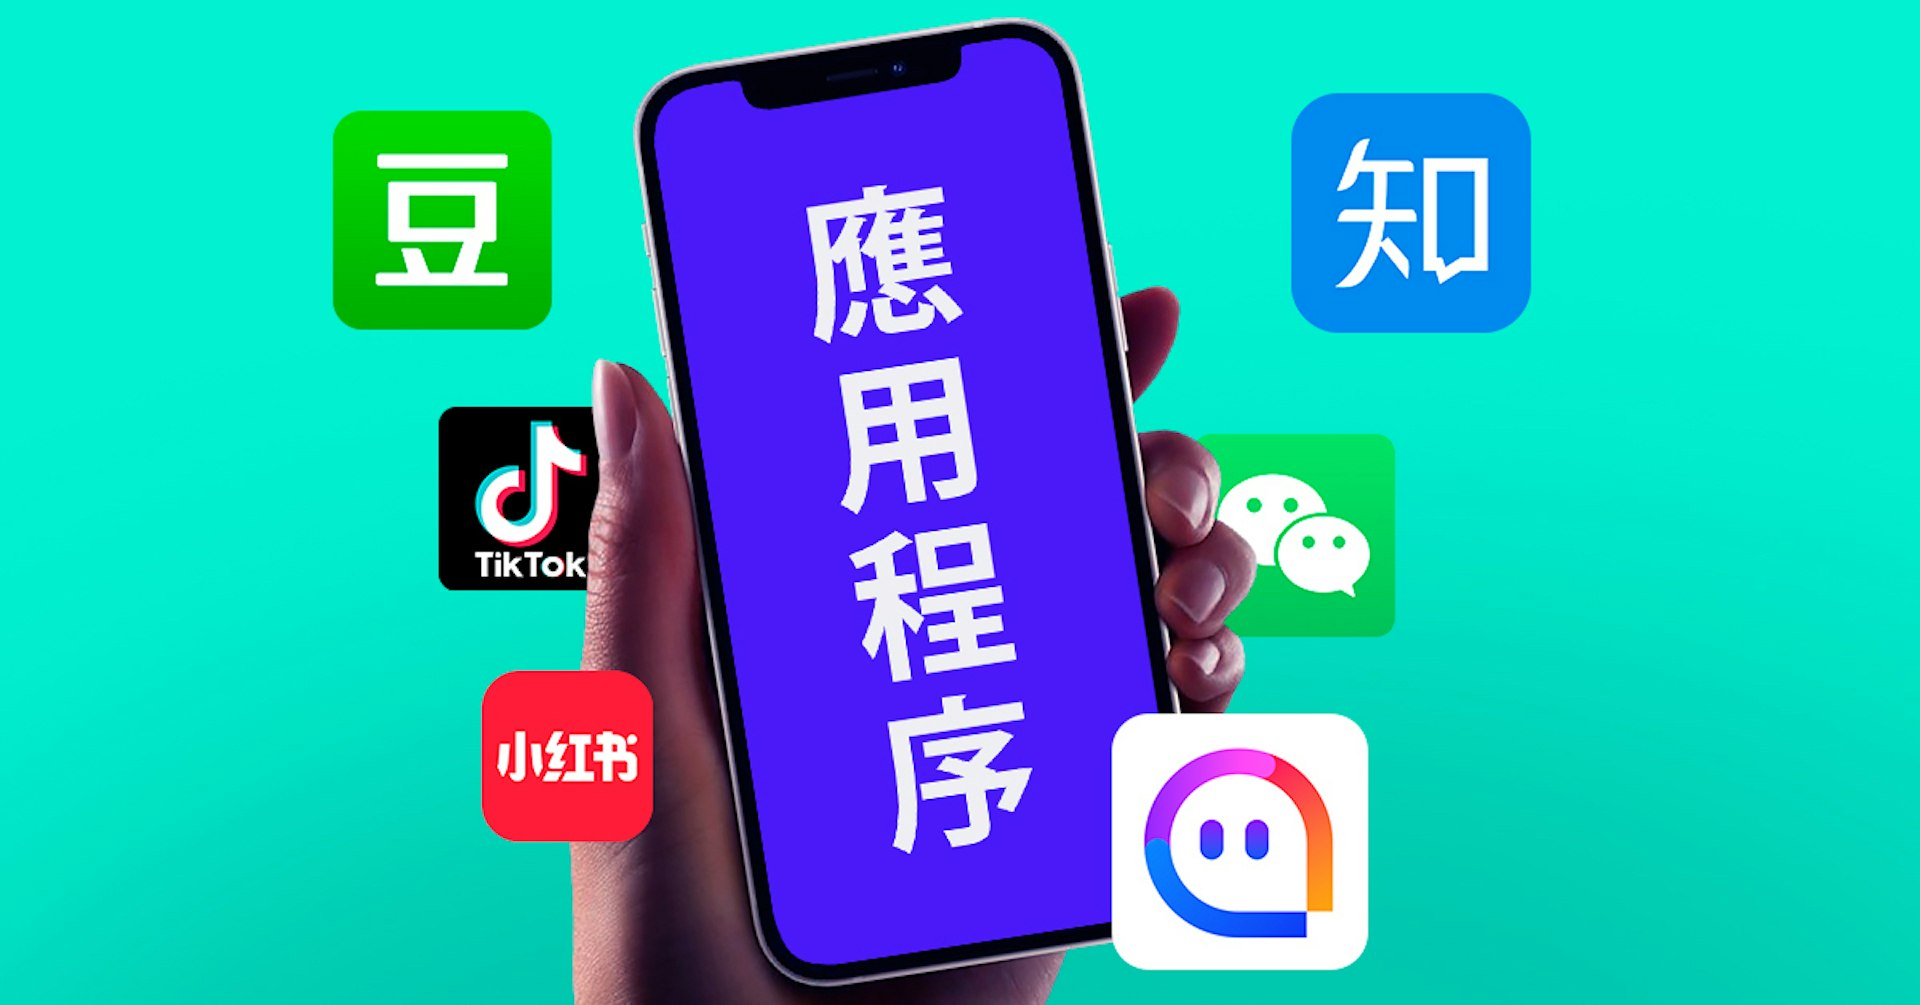 ¿Conoces las principales redes sociales chinas? Aprende cómo llevar tu marca al mercado chino